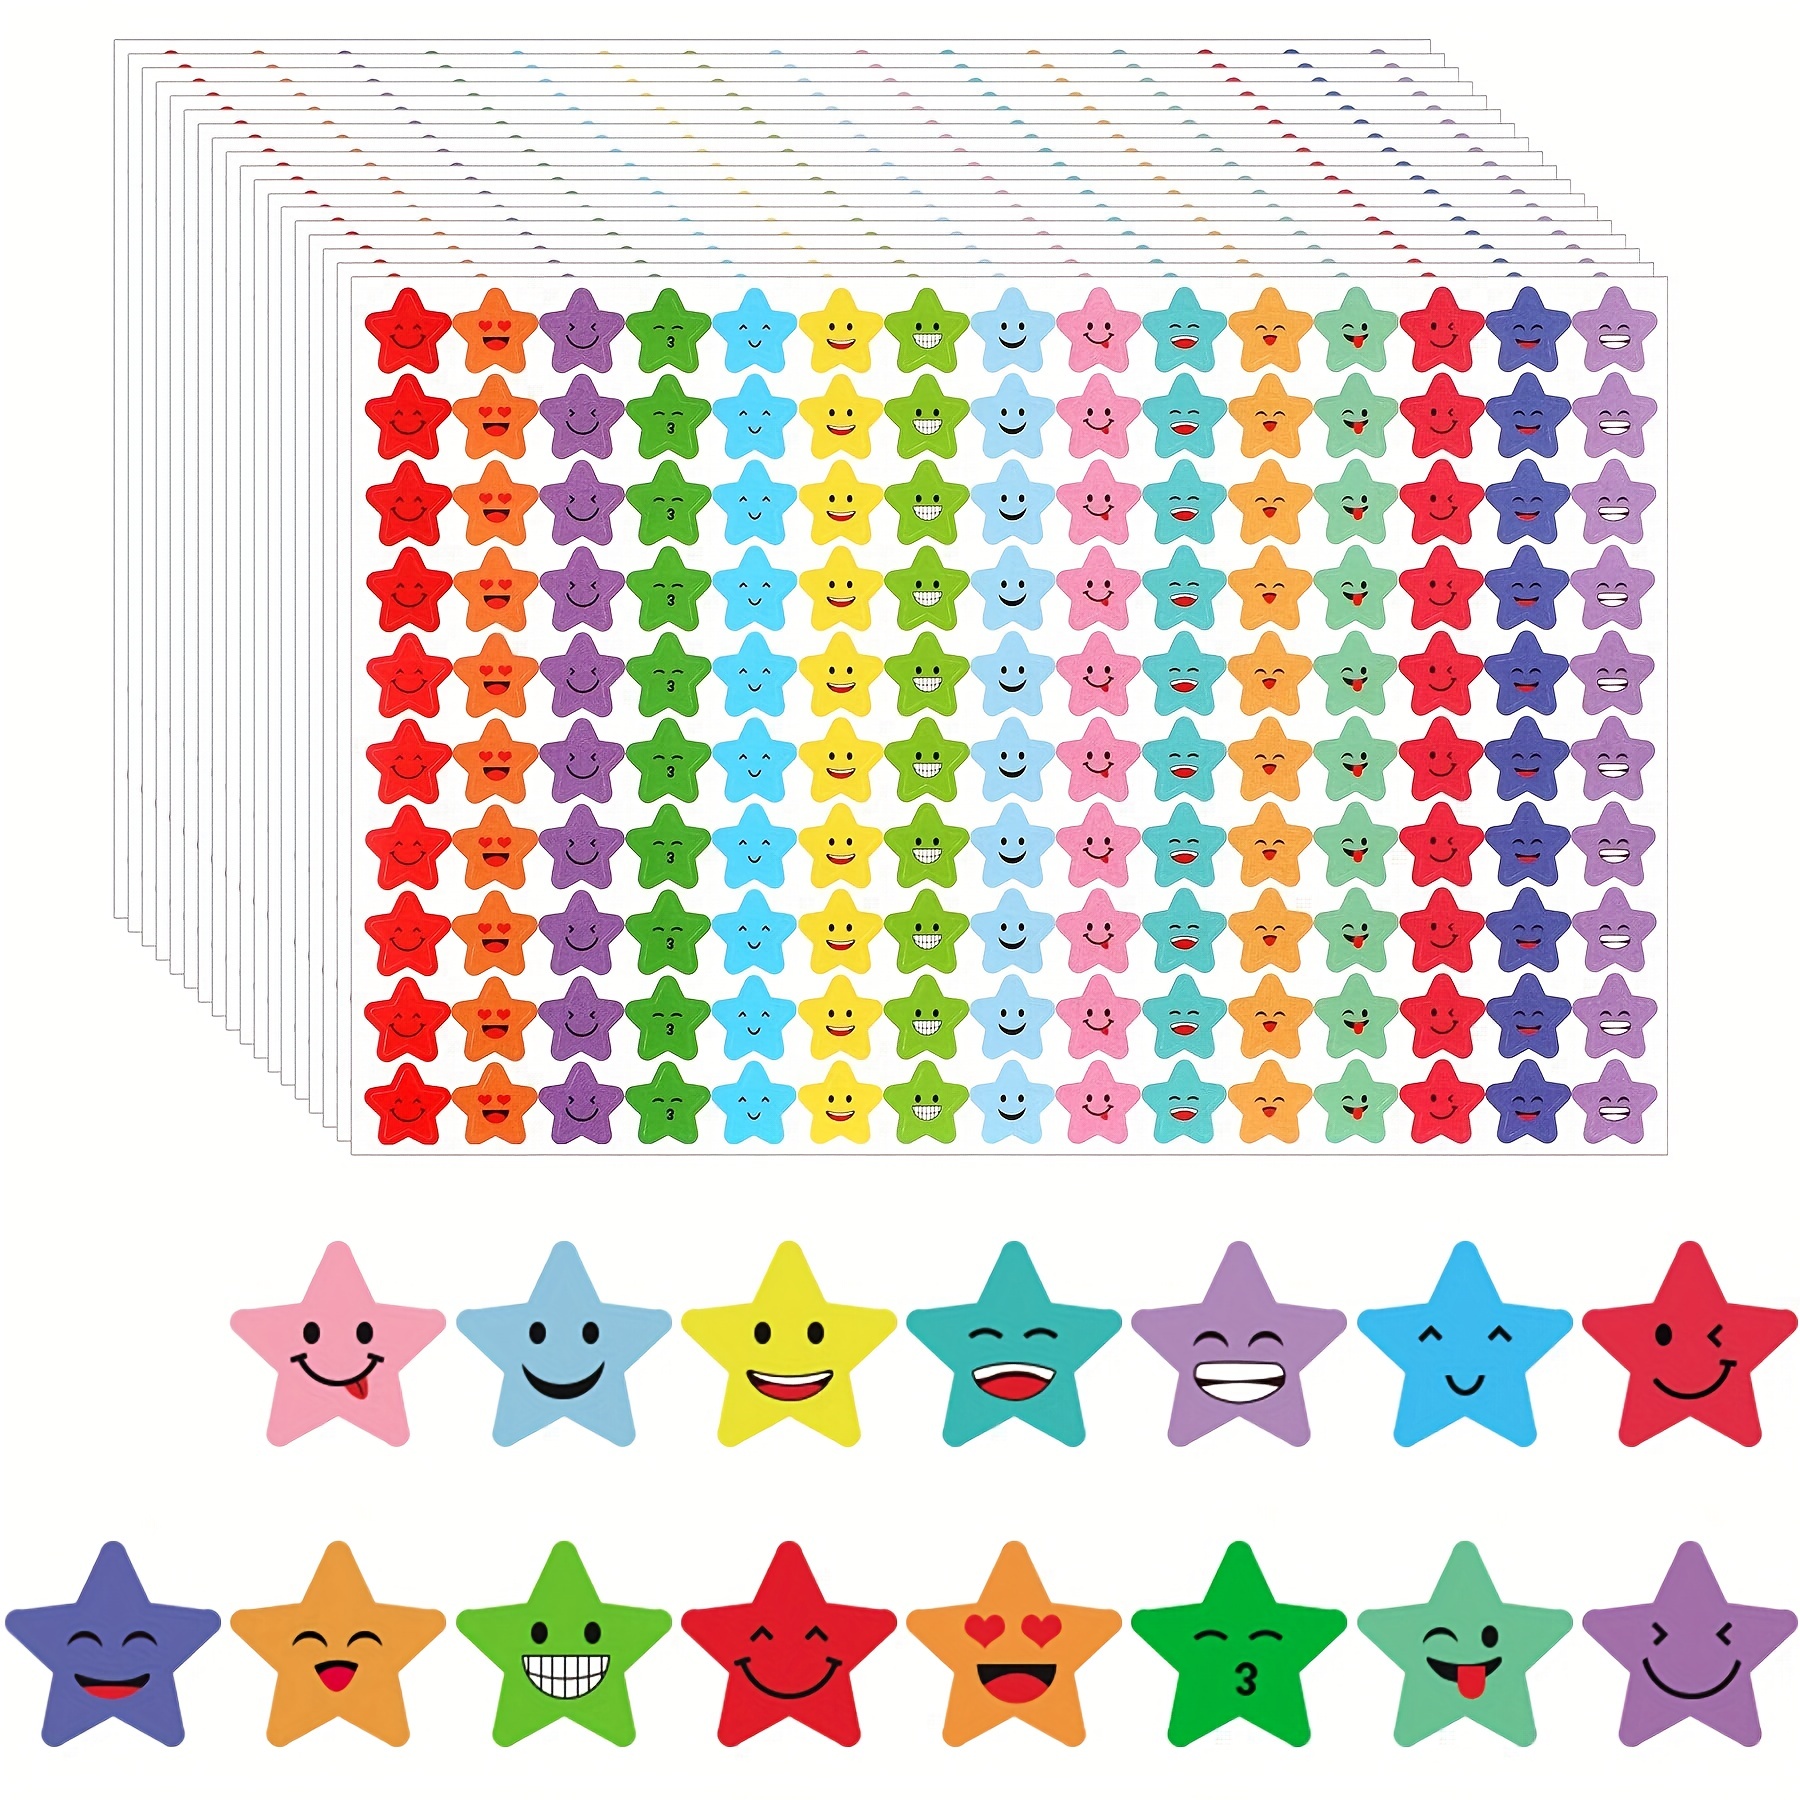 10 Sheets Star Sticker School Kids Rewards Encouragement Craft Diy Toy Gift  Kawaii